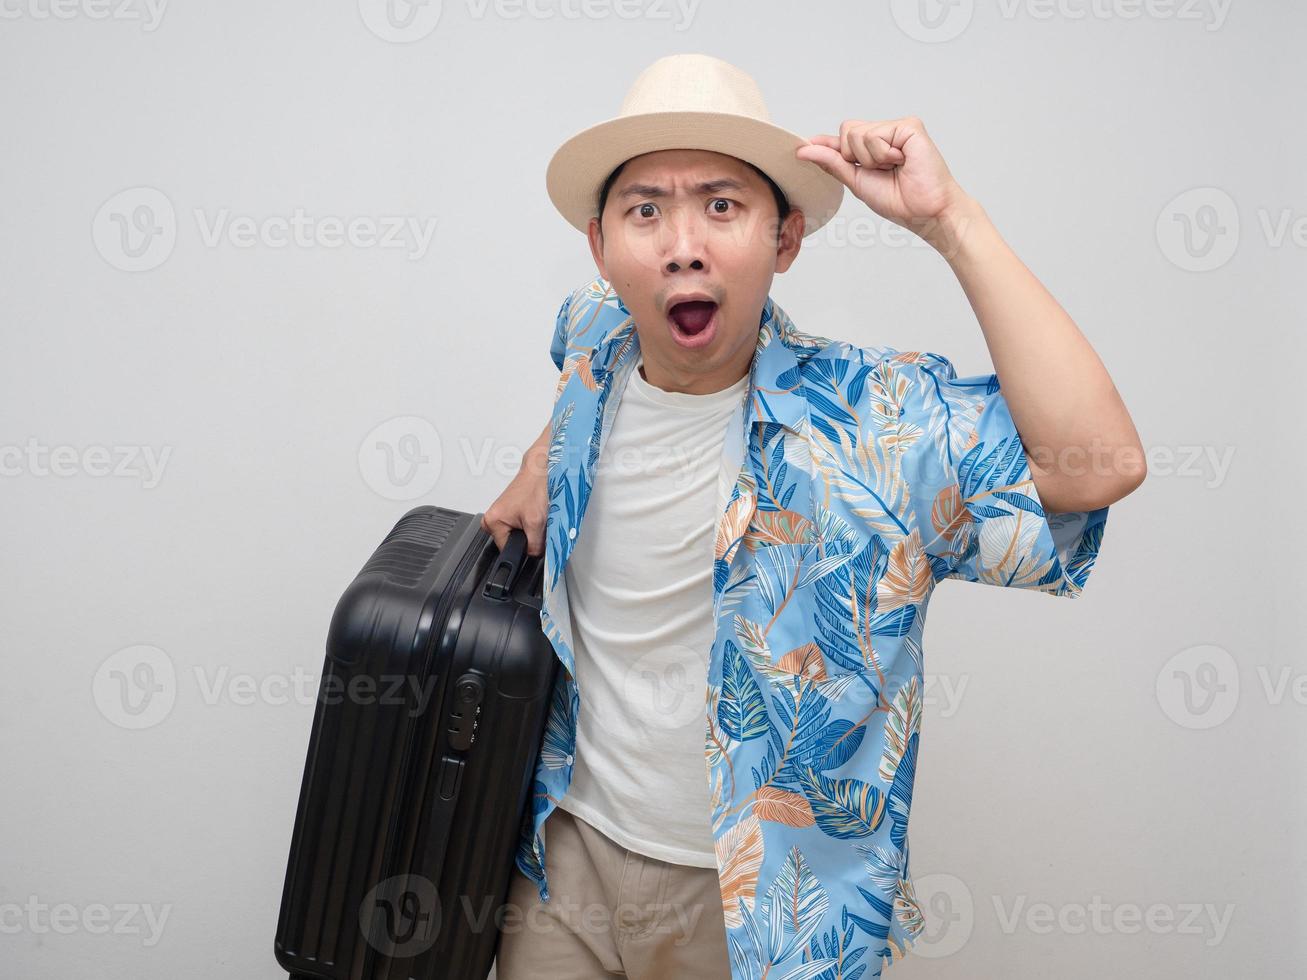 tourismus mann trägt hut gepäck geste mit urlaub erstaunt foto